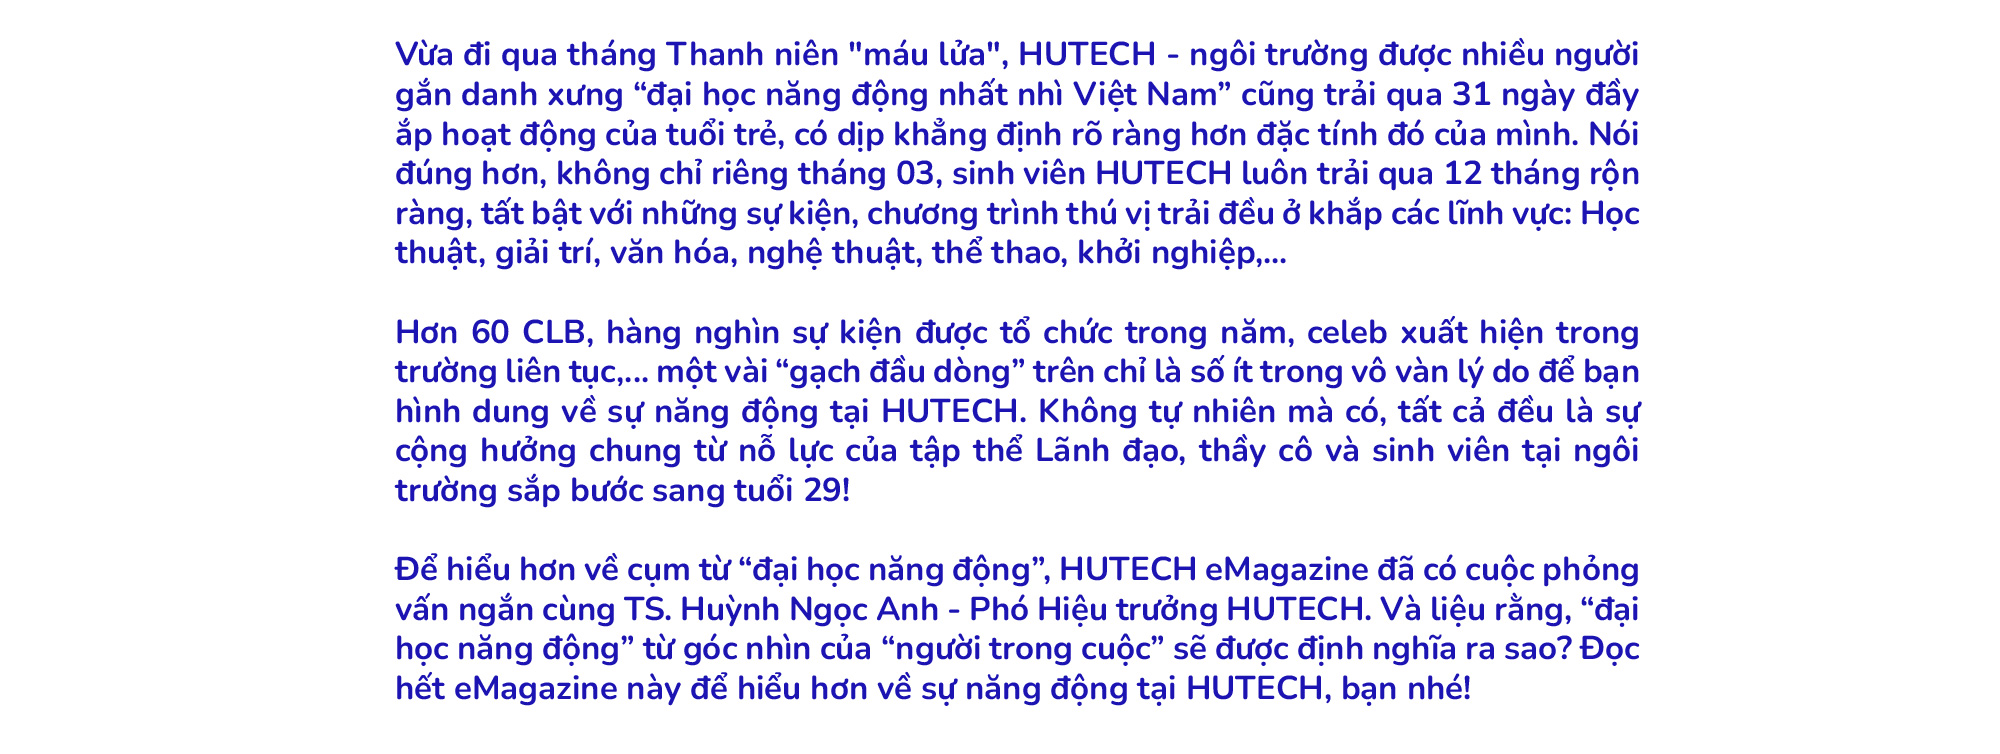 TS. Huỳnh Ngọc Anh: “Năng động” đã trở thành “đặc điểm nhận diện” của sinh viên HUTECH 4